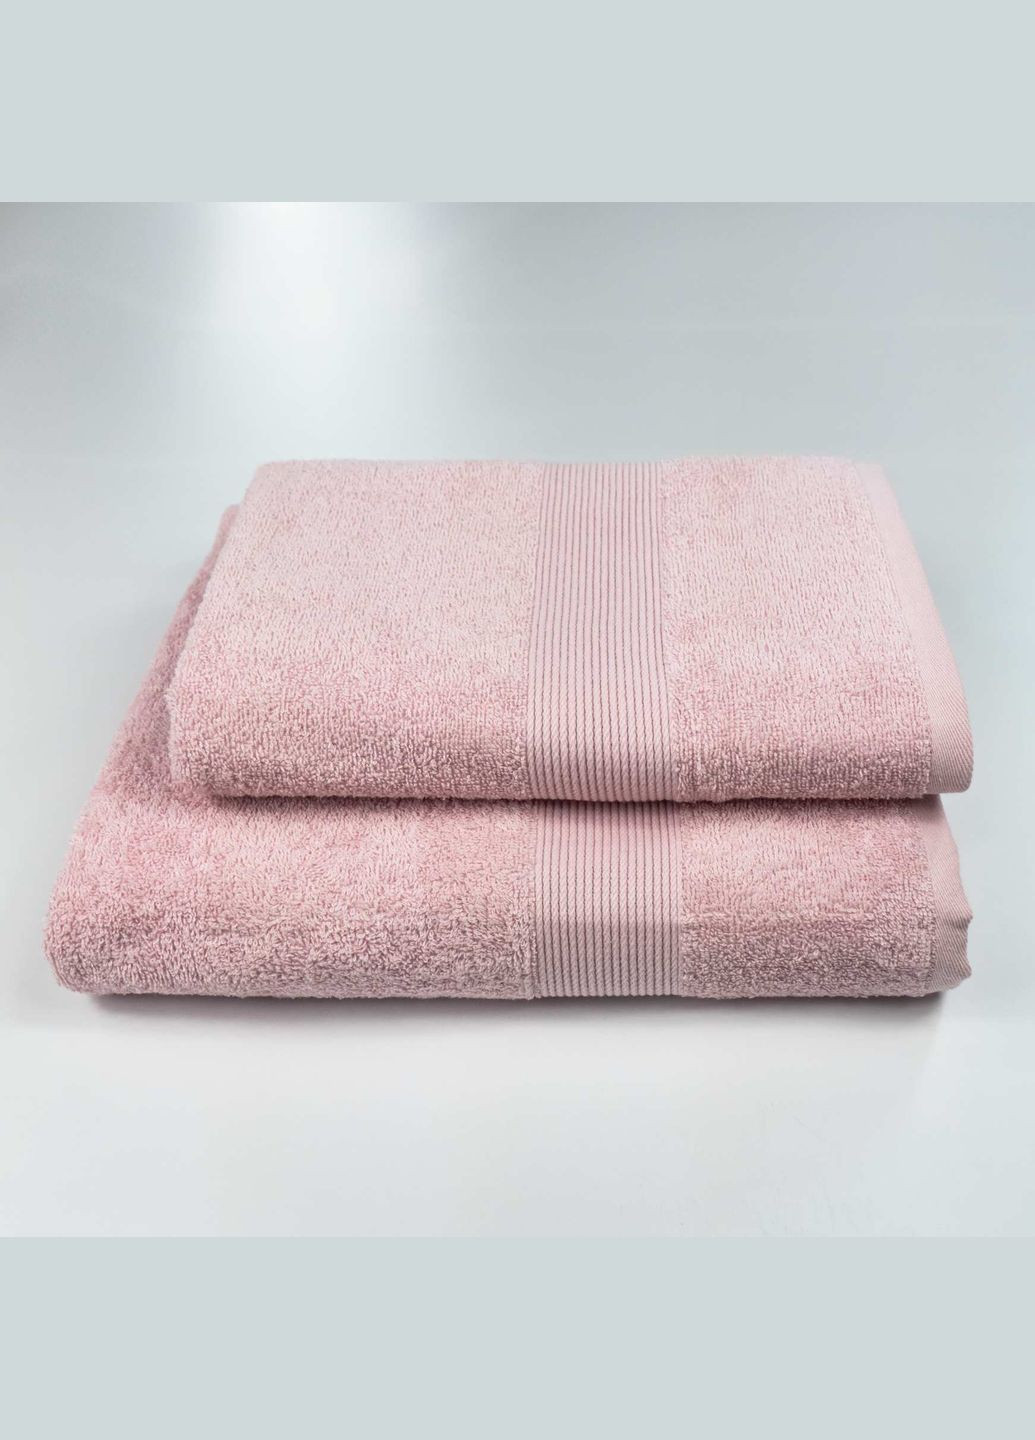 GM Textile комплект махровых полотенец с бордюром 2шт 50х90см, 70х140см 400г/м2 () розовый производство -